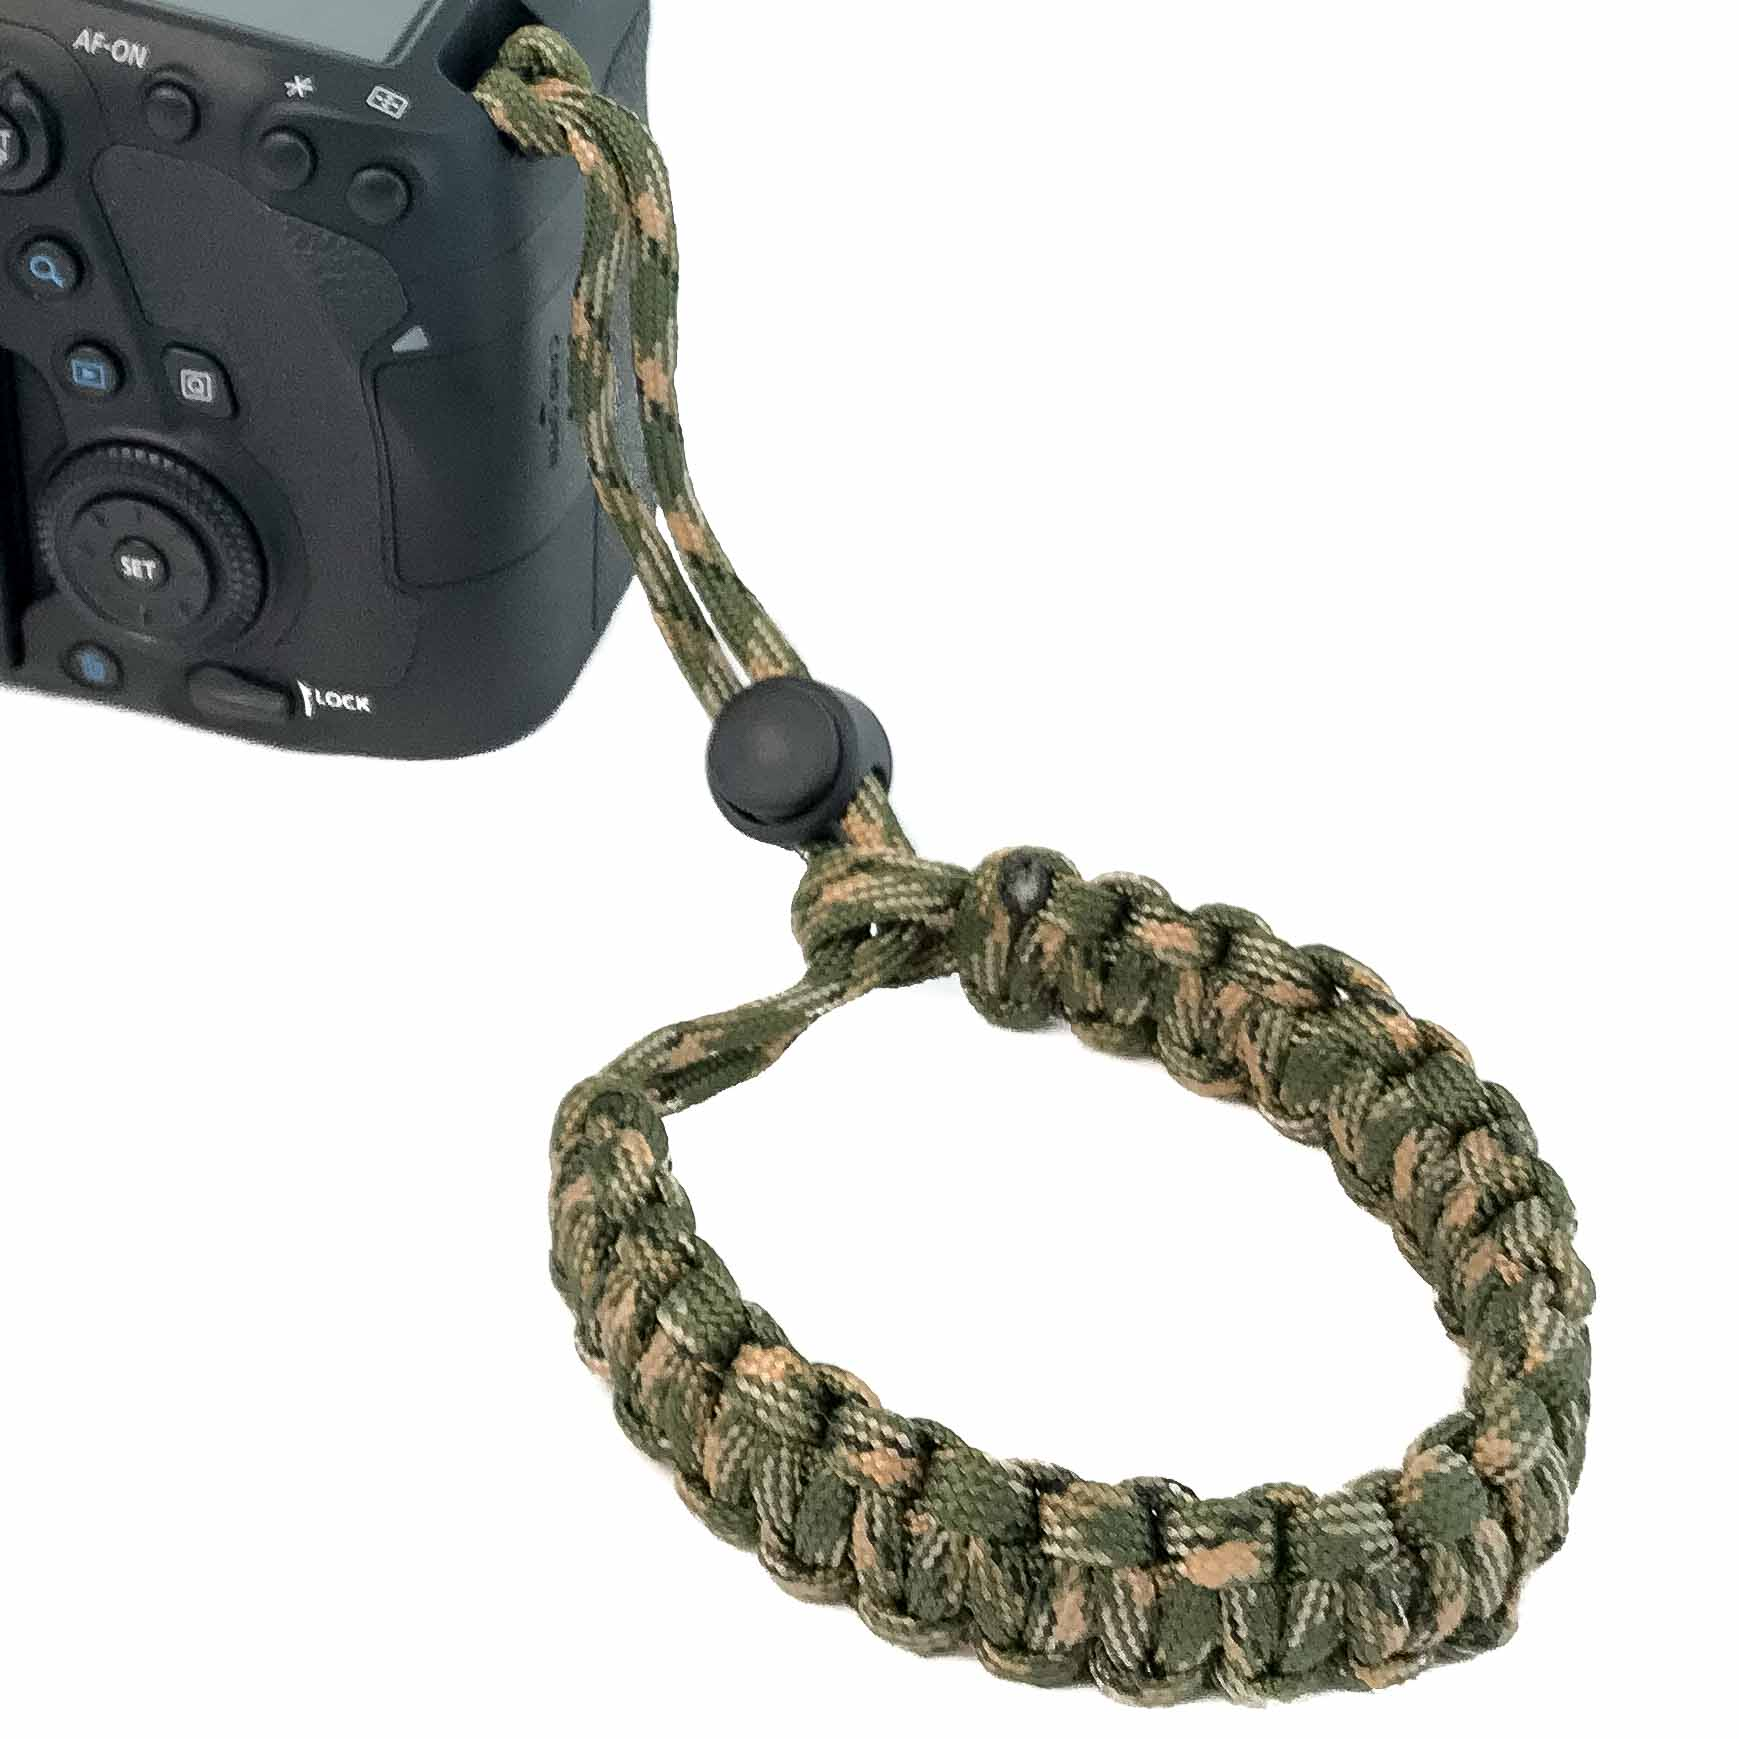 LENS-AID Kamera Handschlaufe aus fürs Handschlaufe, Paracord Camouflage/Grün Handgelenk, Kamera